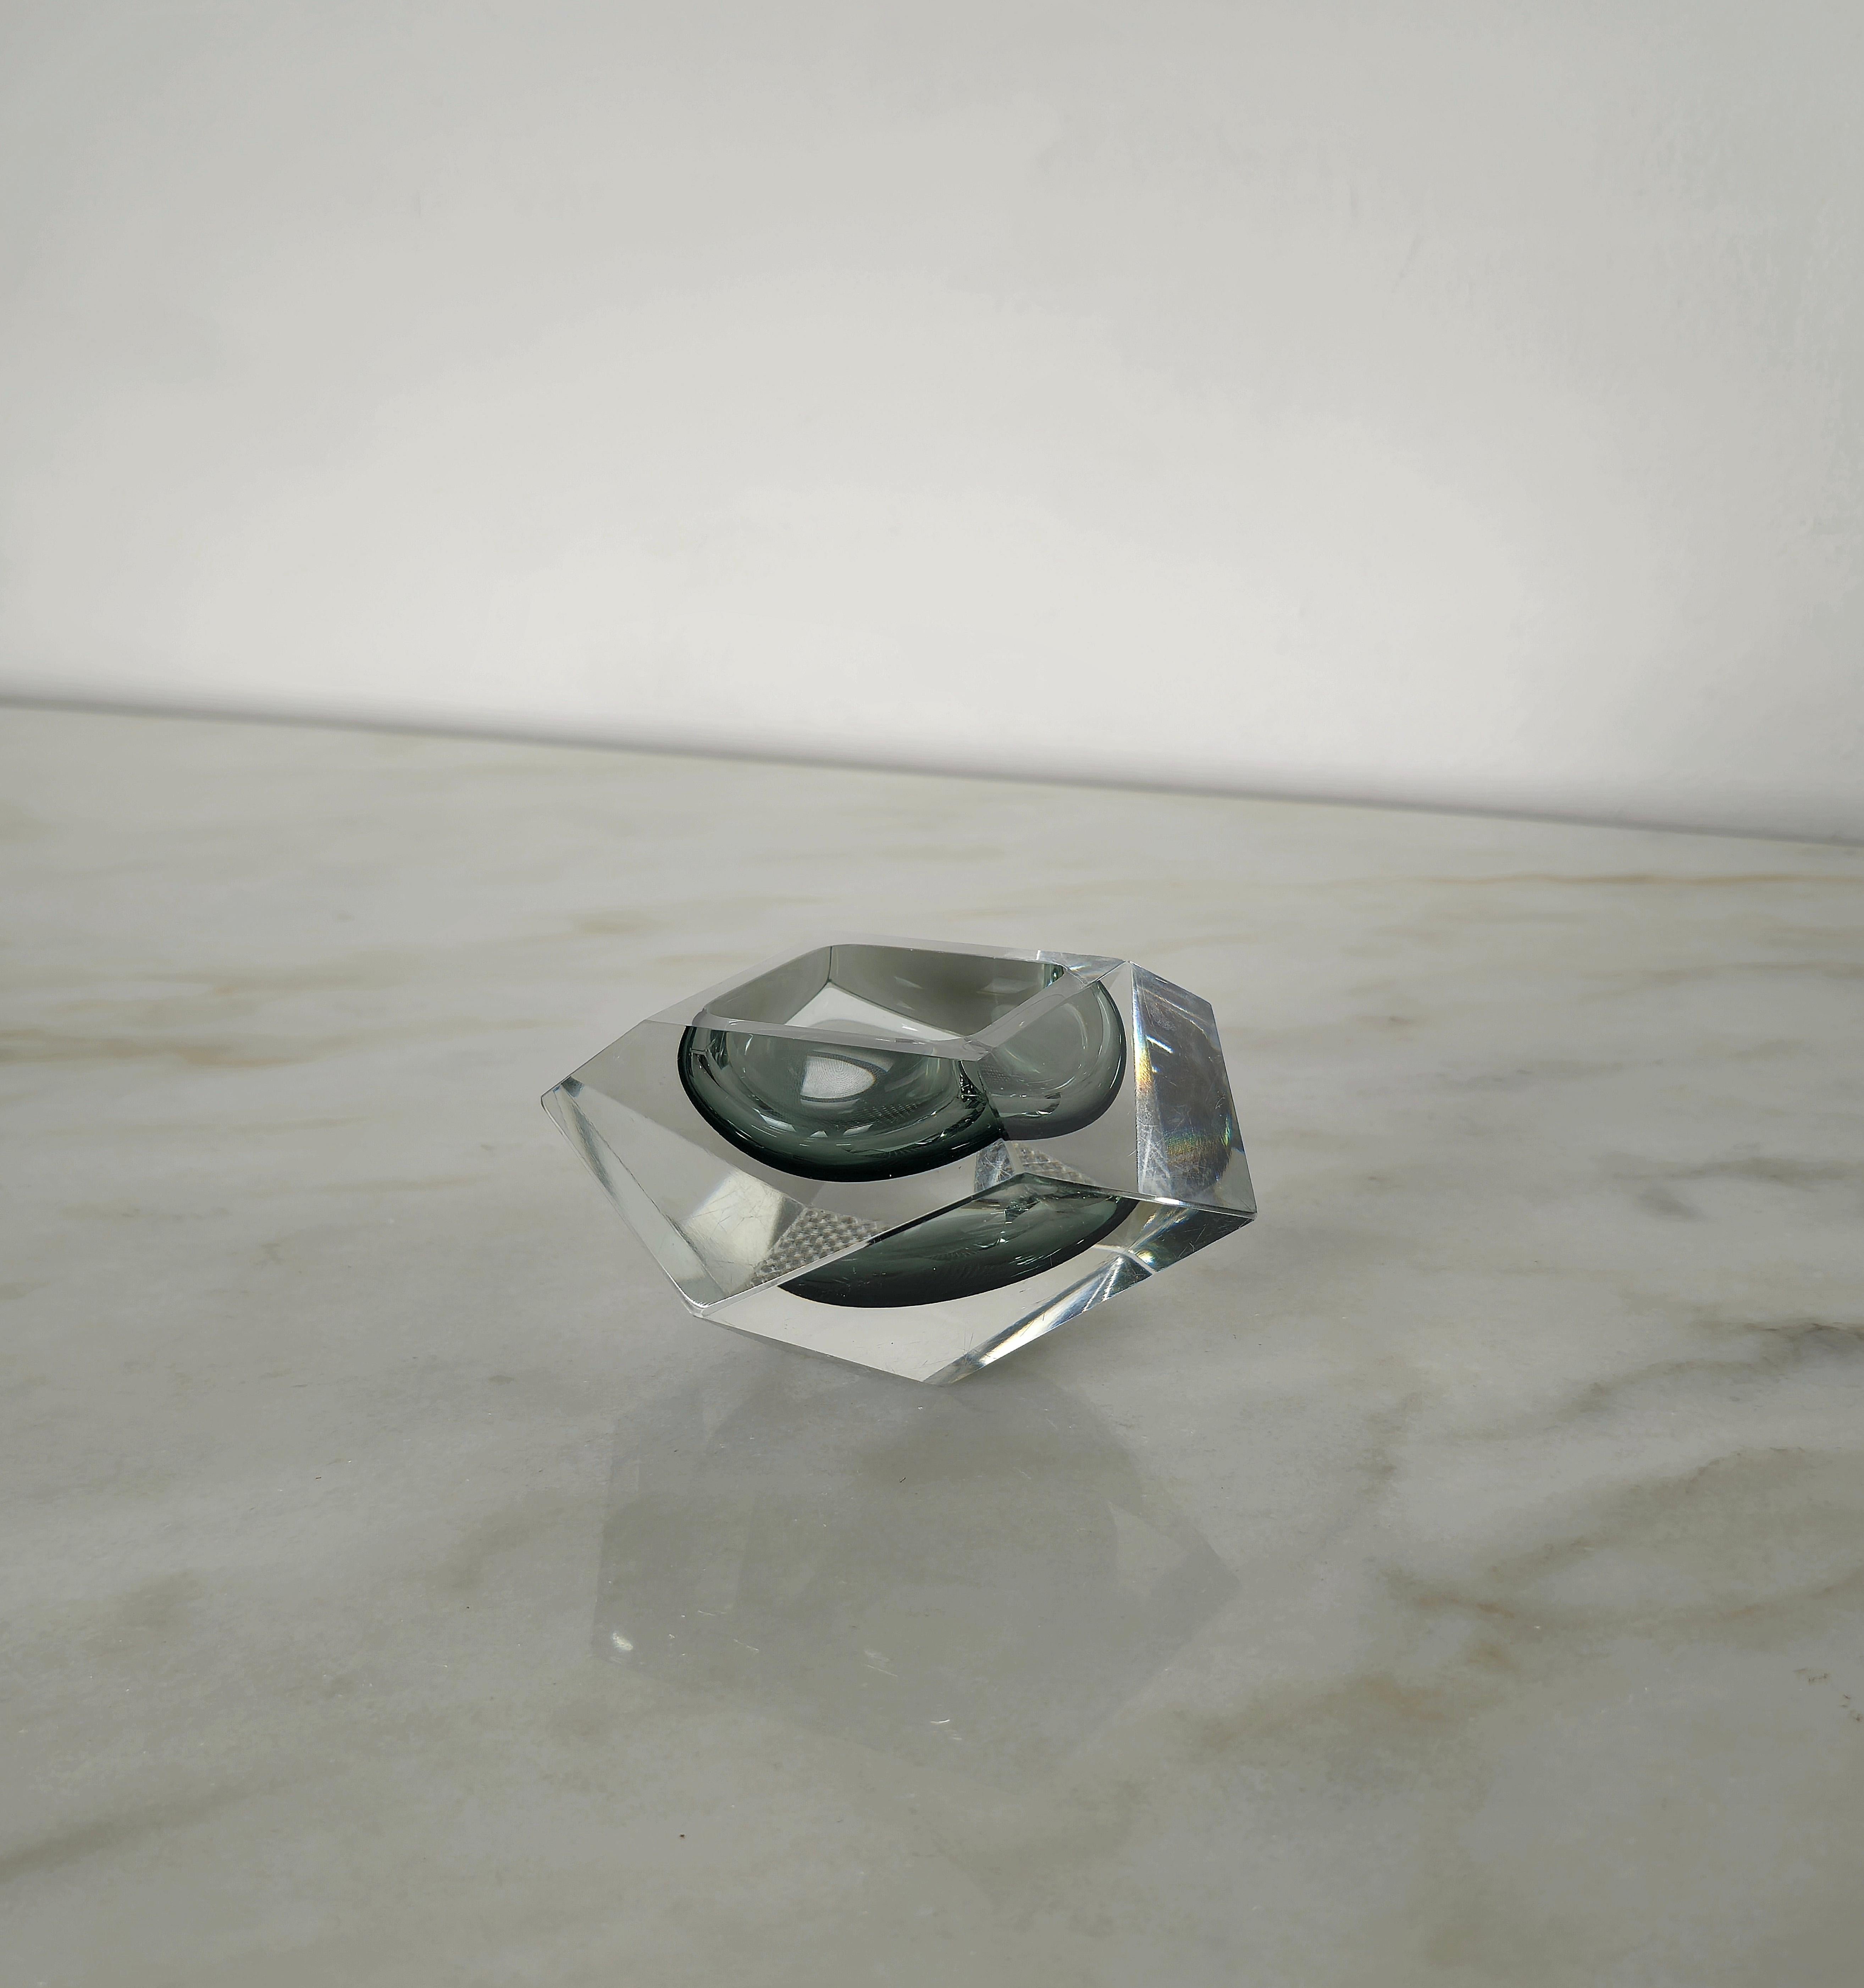 20th Century Decorative Object Bowl Vide-Poche Flavio Poli Murano Glass Midcentury Italy 1960 For Sale